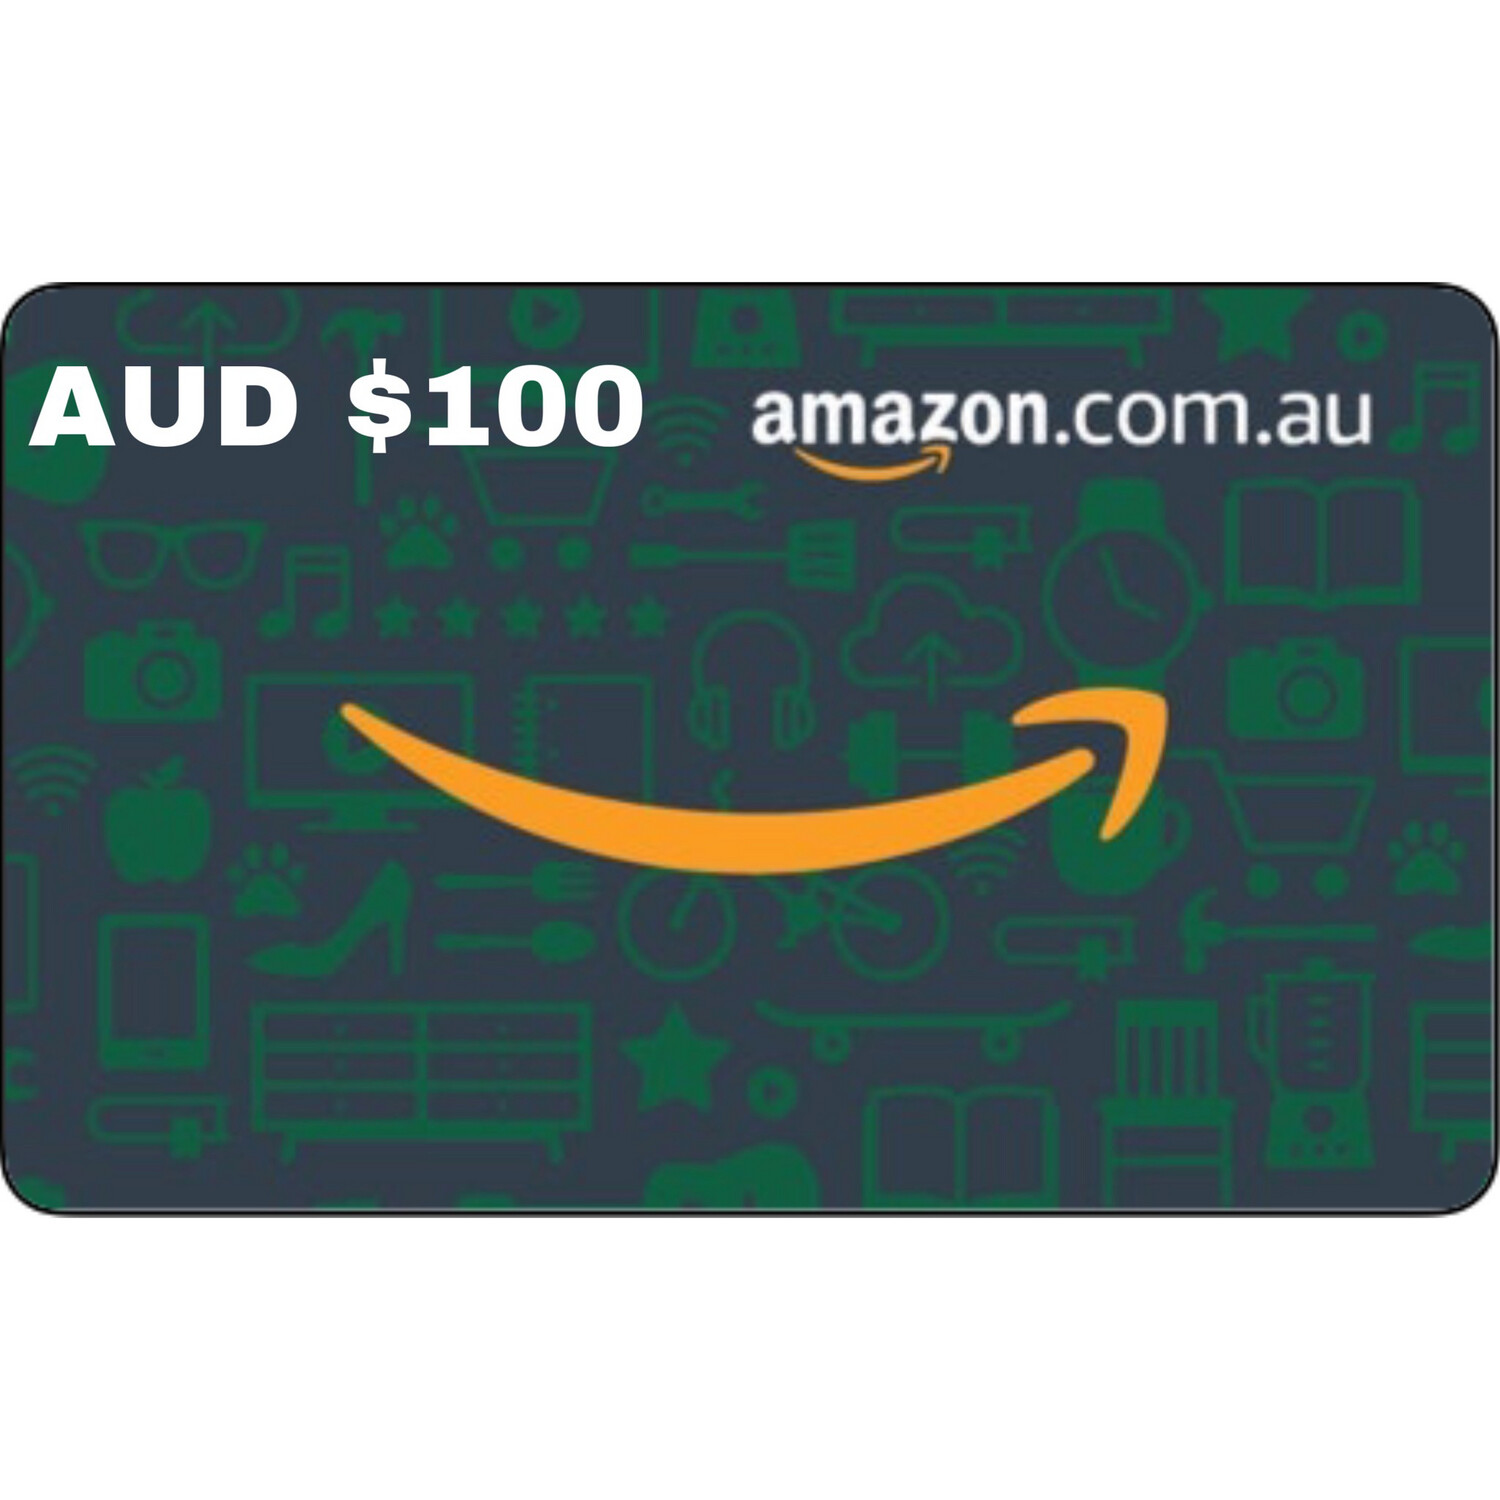 Amazon.com.au Gift Card Australia AUD $100